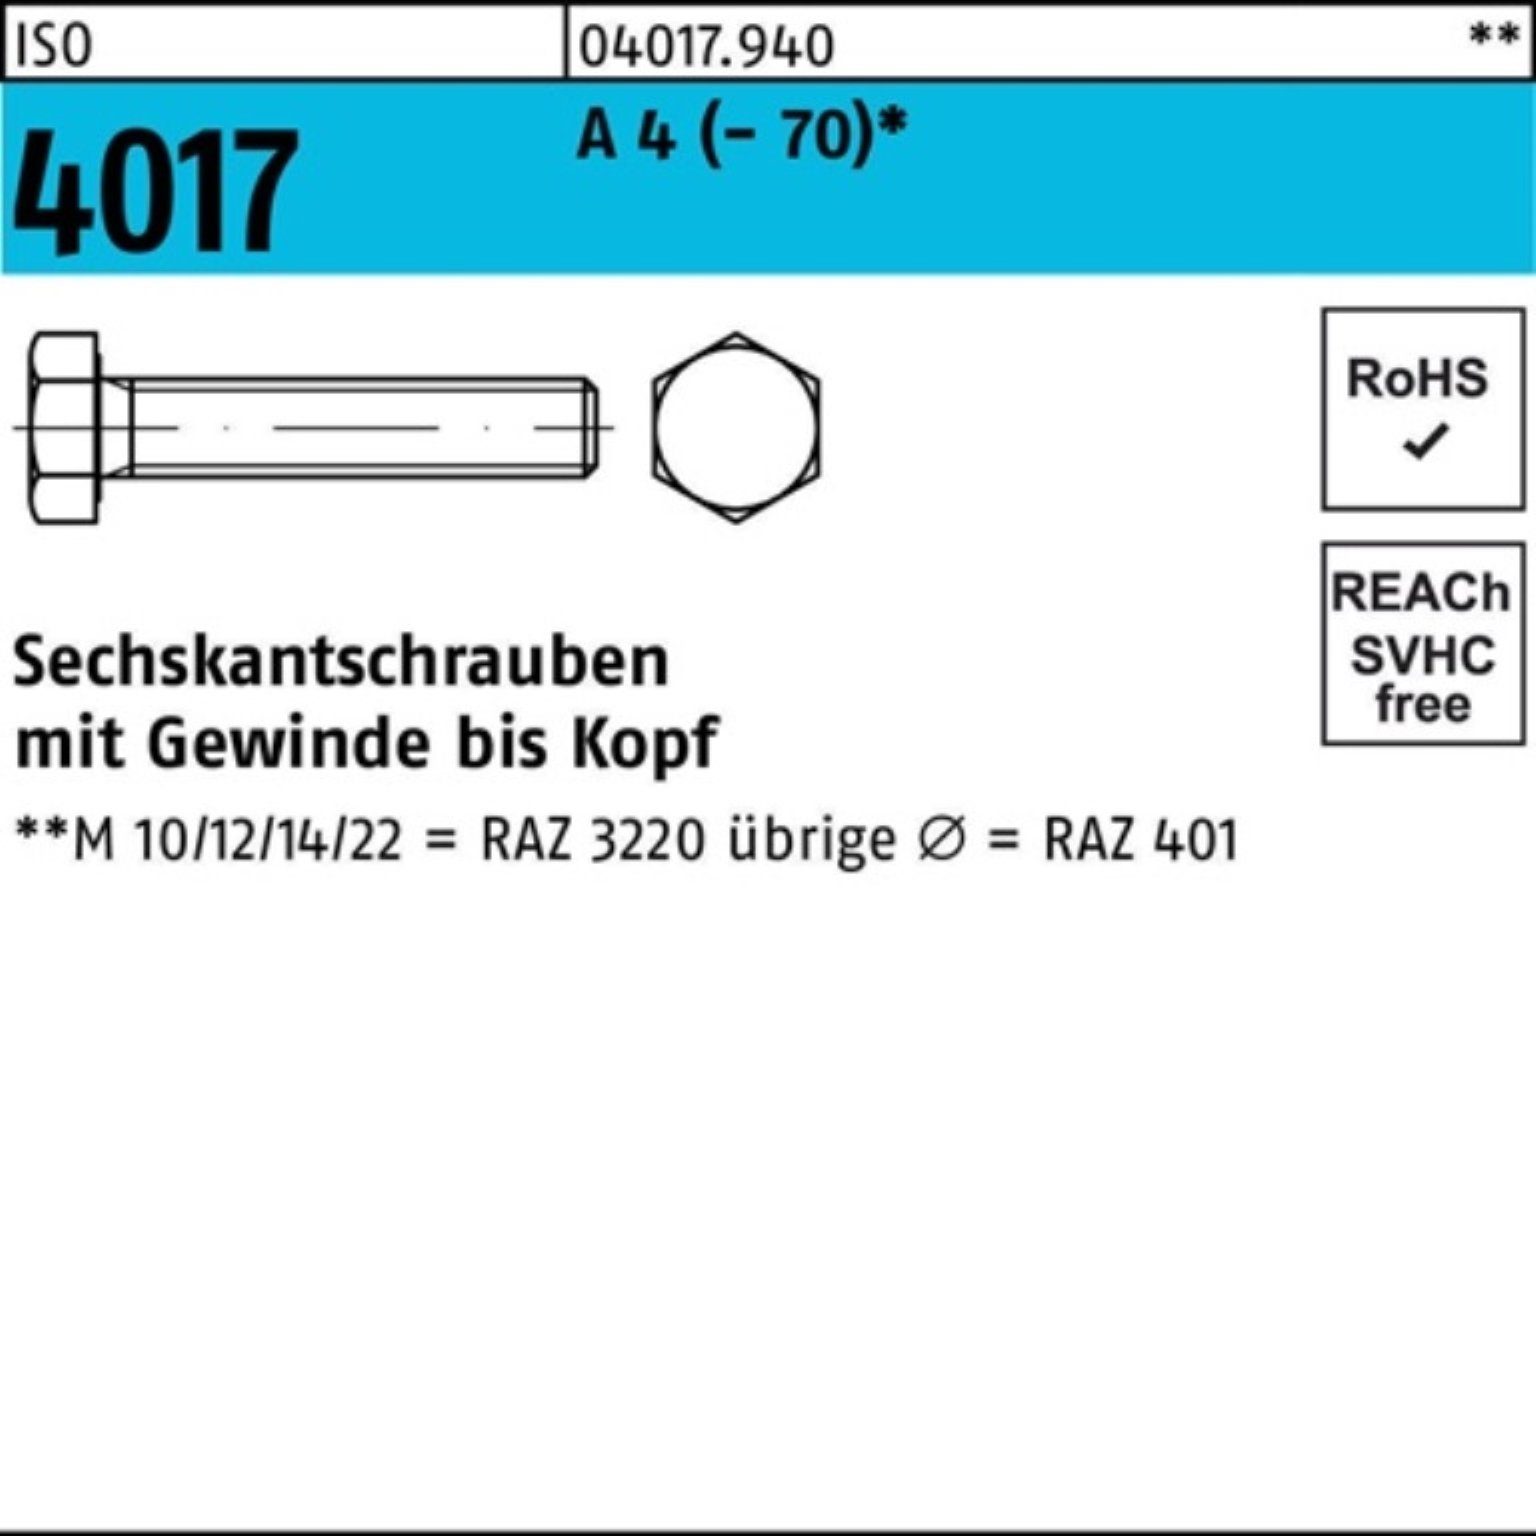 Bufab Sechskantschraube 100er Pack Sechskantschraube (70) 100 4 A ISO M10x VG Stück 4017 40